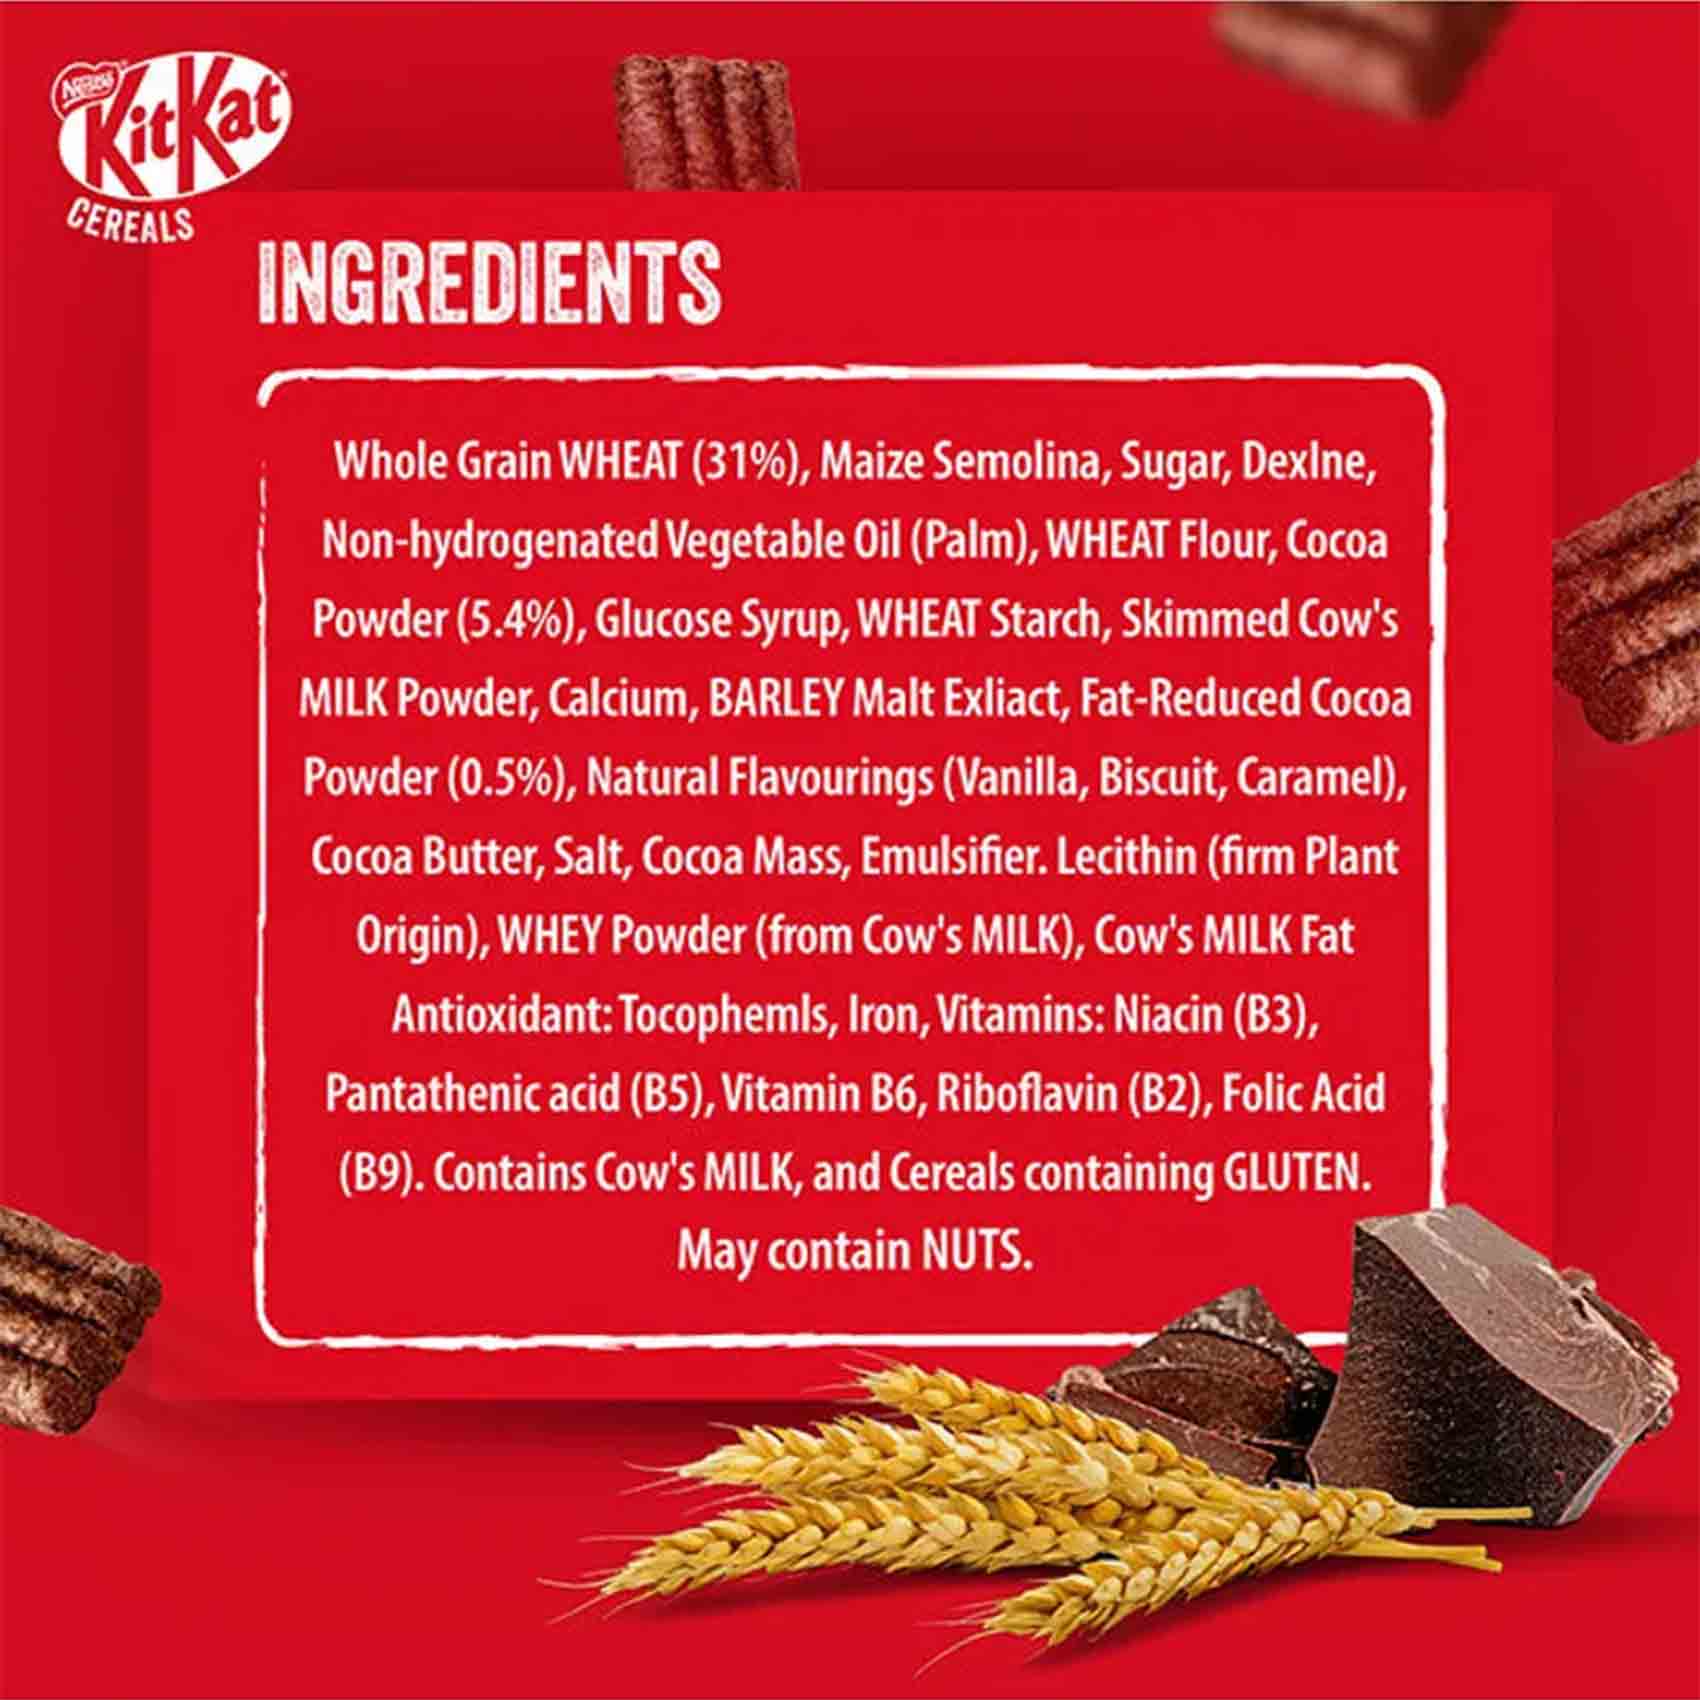 Nestle - Kitkat Cereal 330g